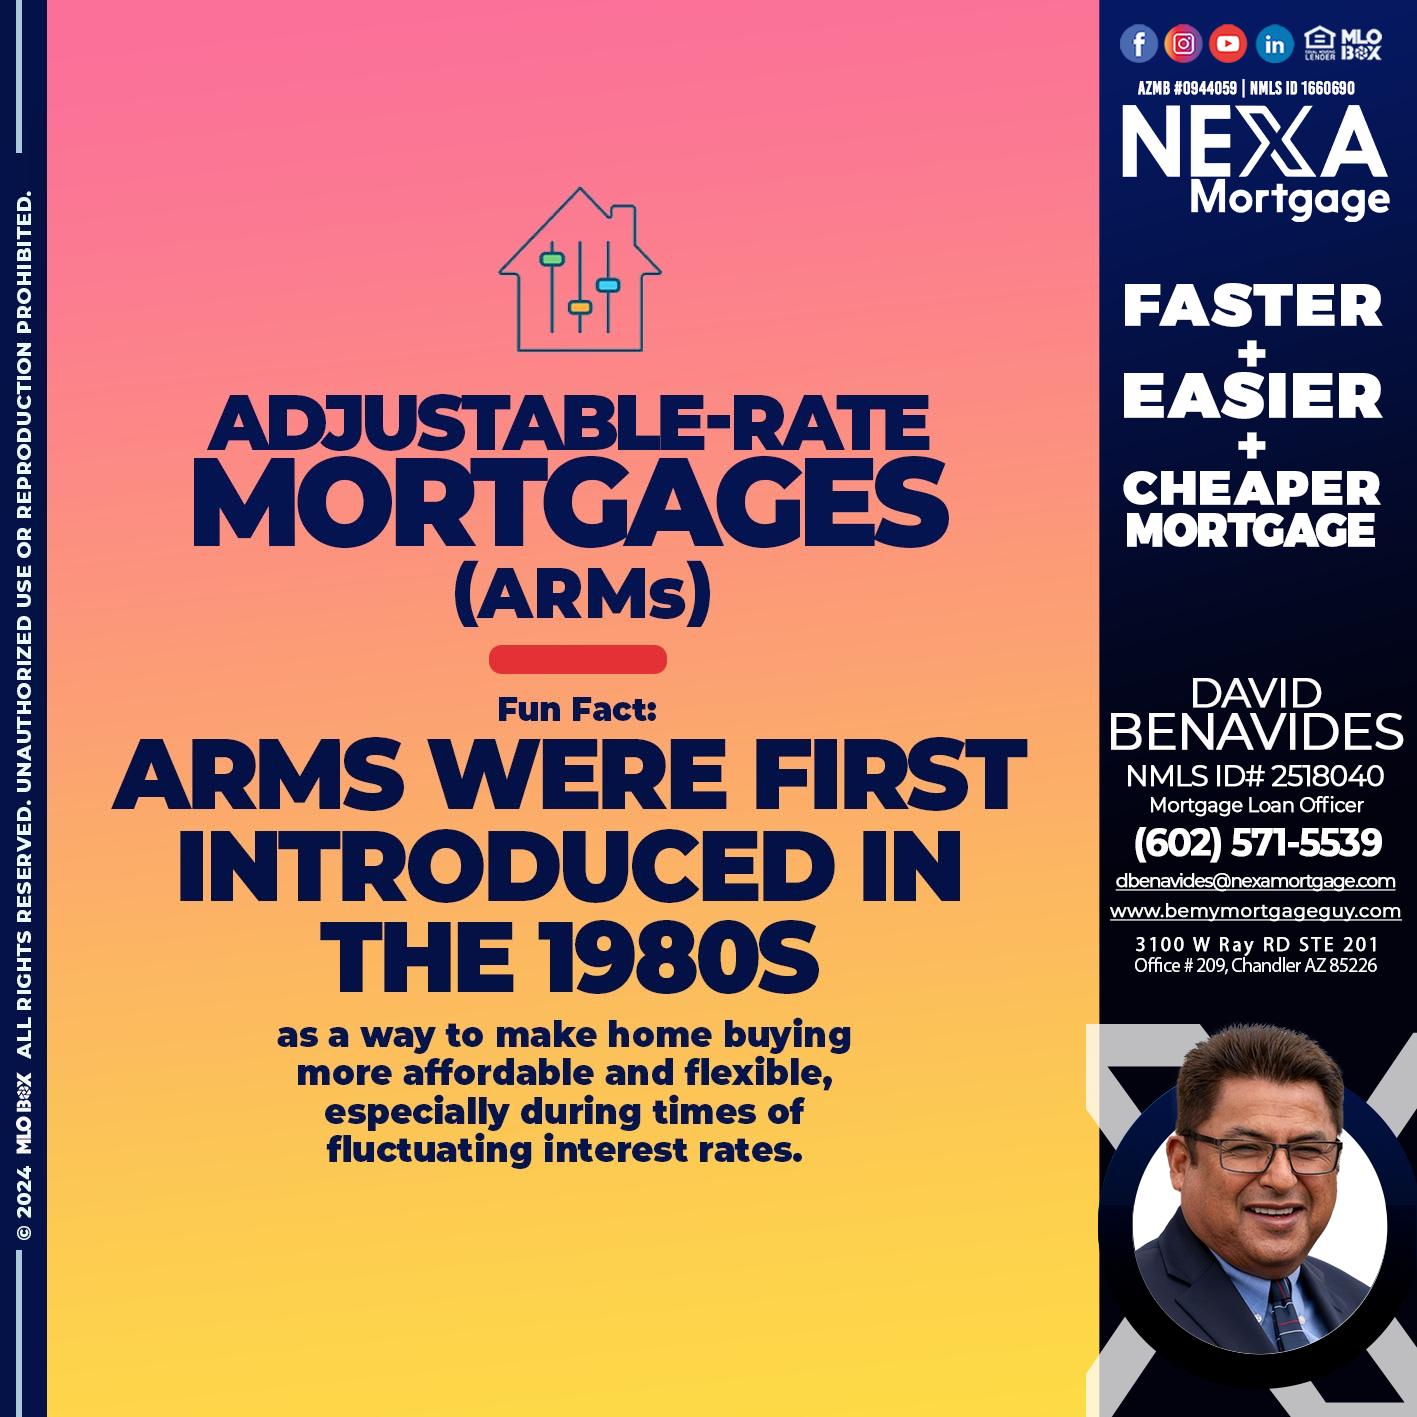 ADJUSTABLE - David Benavides -Mortgage Loan Officer